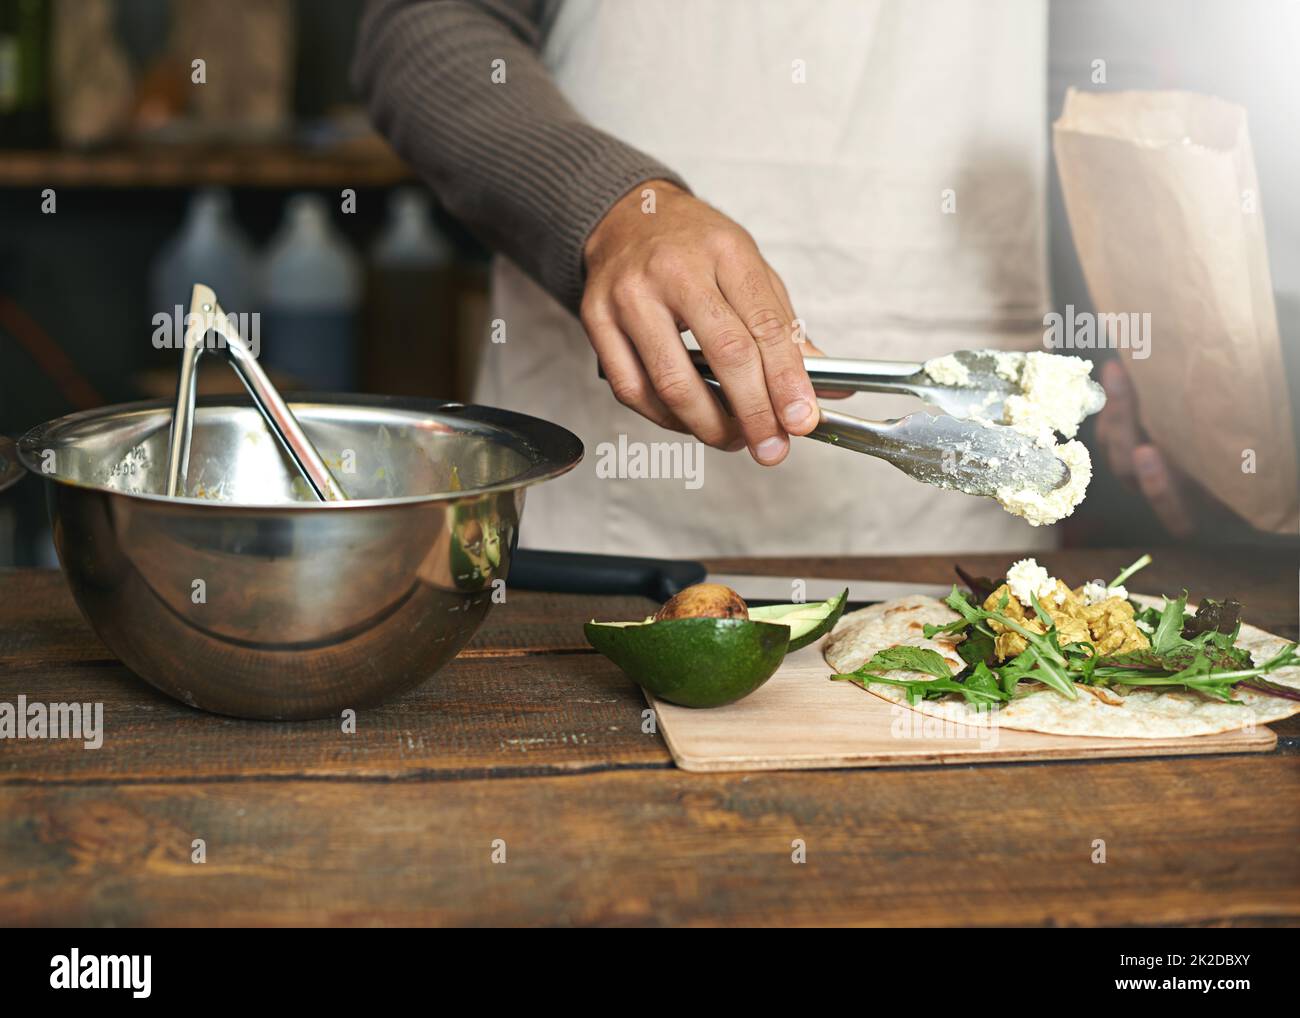 Gute Lebensmittel aus frischen Zutaten zubereiten. Eine kleine Aufnahme eines Mannes, der in einer Küche eine Mahlzeit zubereitet. Stockfoto